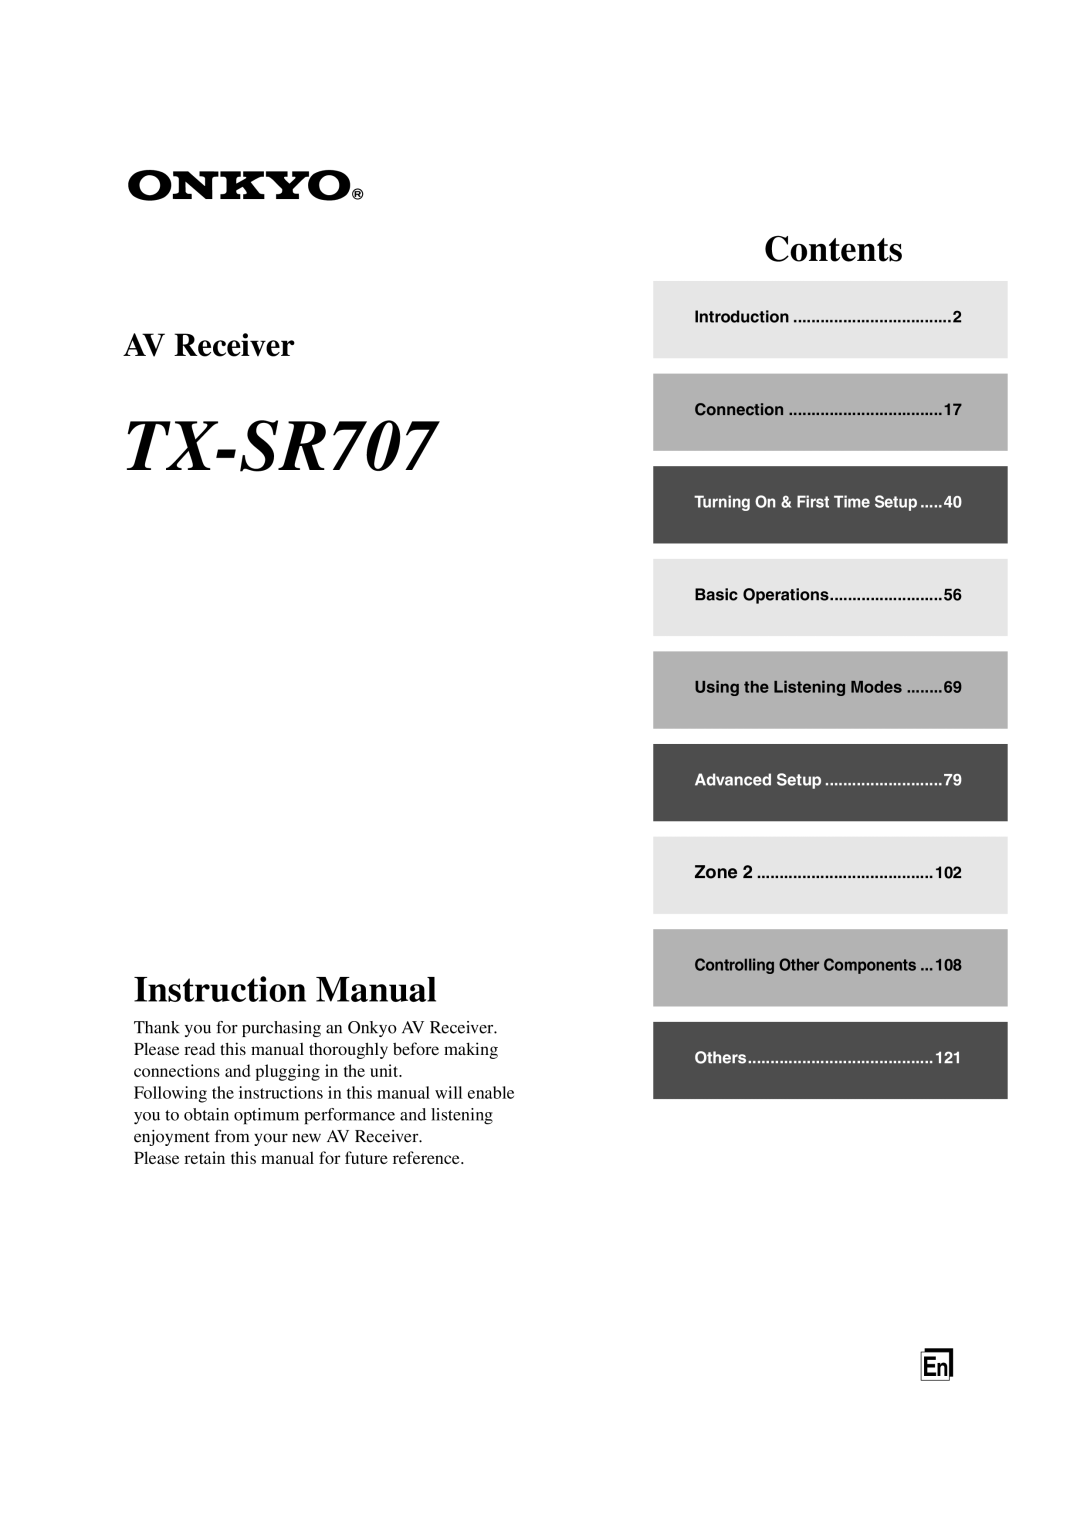 Onkyo TX-SR707 instruction manual Instruction Manual, Contents, AV Receiver 